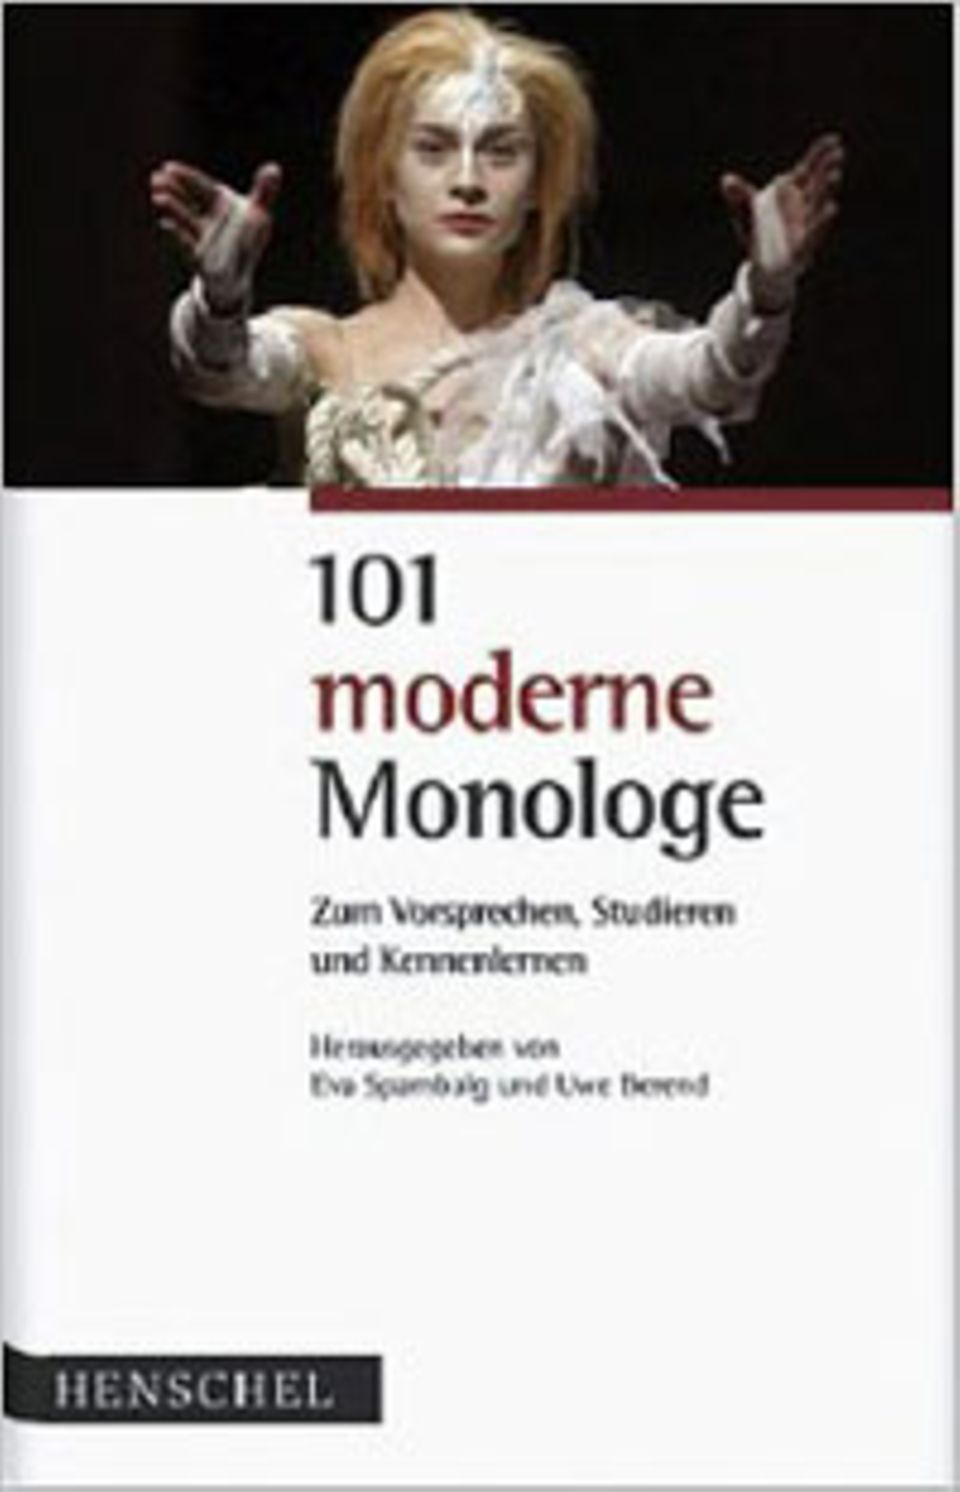 Bücher: "101 moderne Monologe" von Eva Spambalg und Uwe Berend